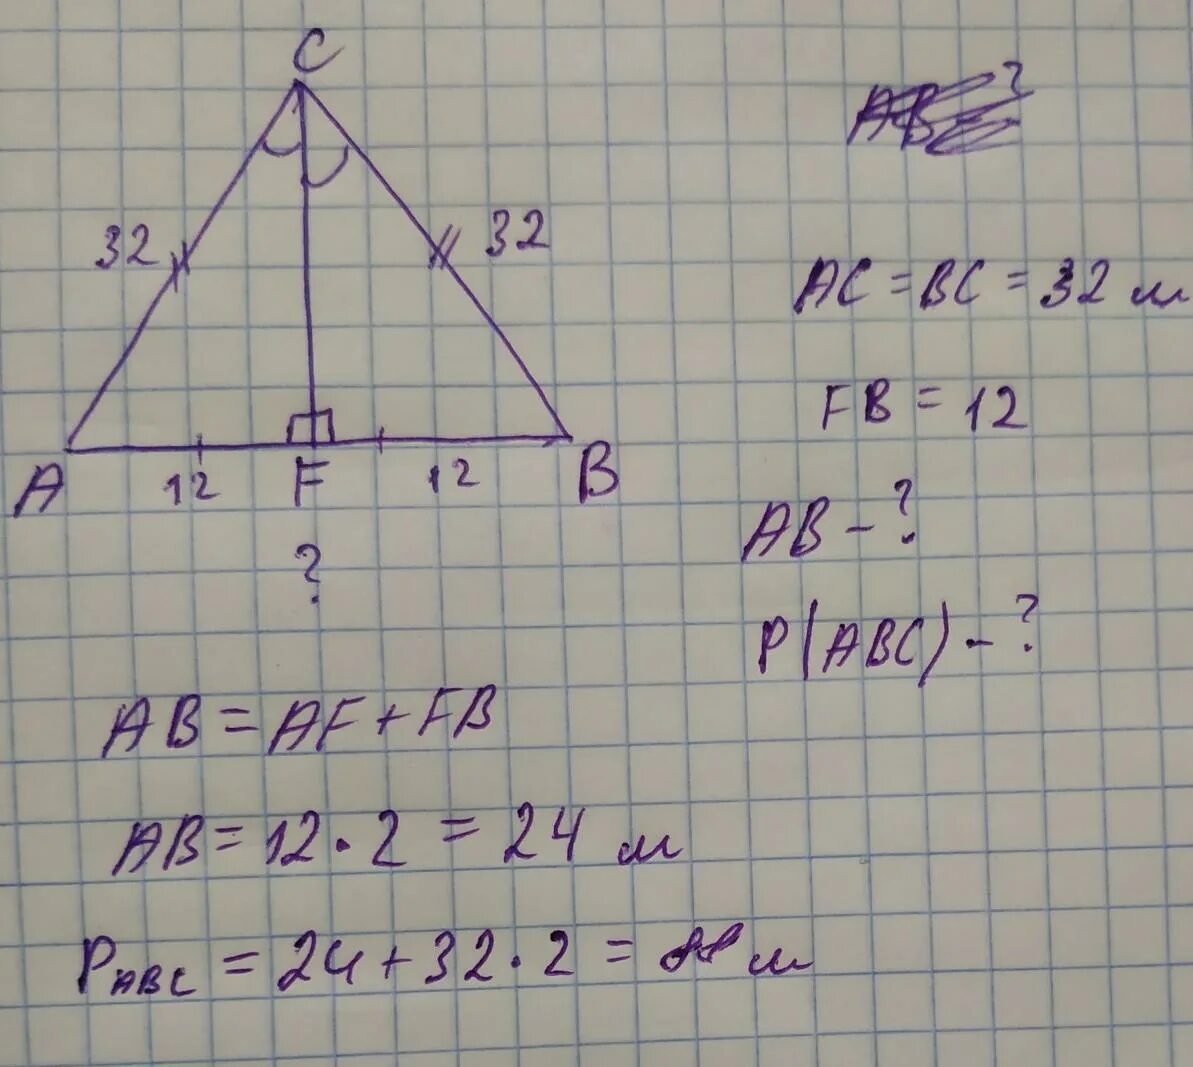 Ab bc 26. Вычисли периметр треугольника. Периметр треугольника с медианой. Вычисли периметр треугольника ABC И сторону ba если CF Медиана. Вычислите периметр треугольника Bac и сторону ab если CF Медиана.